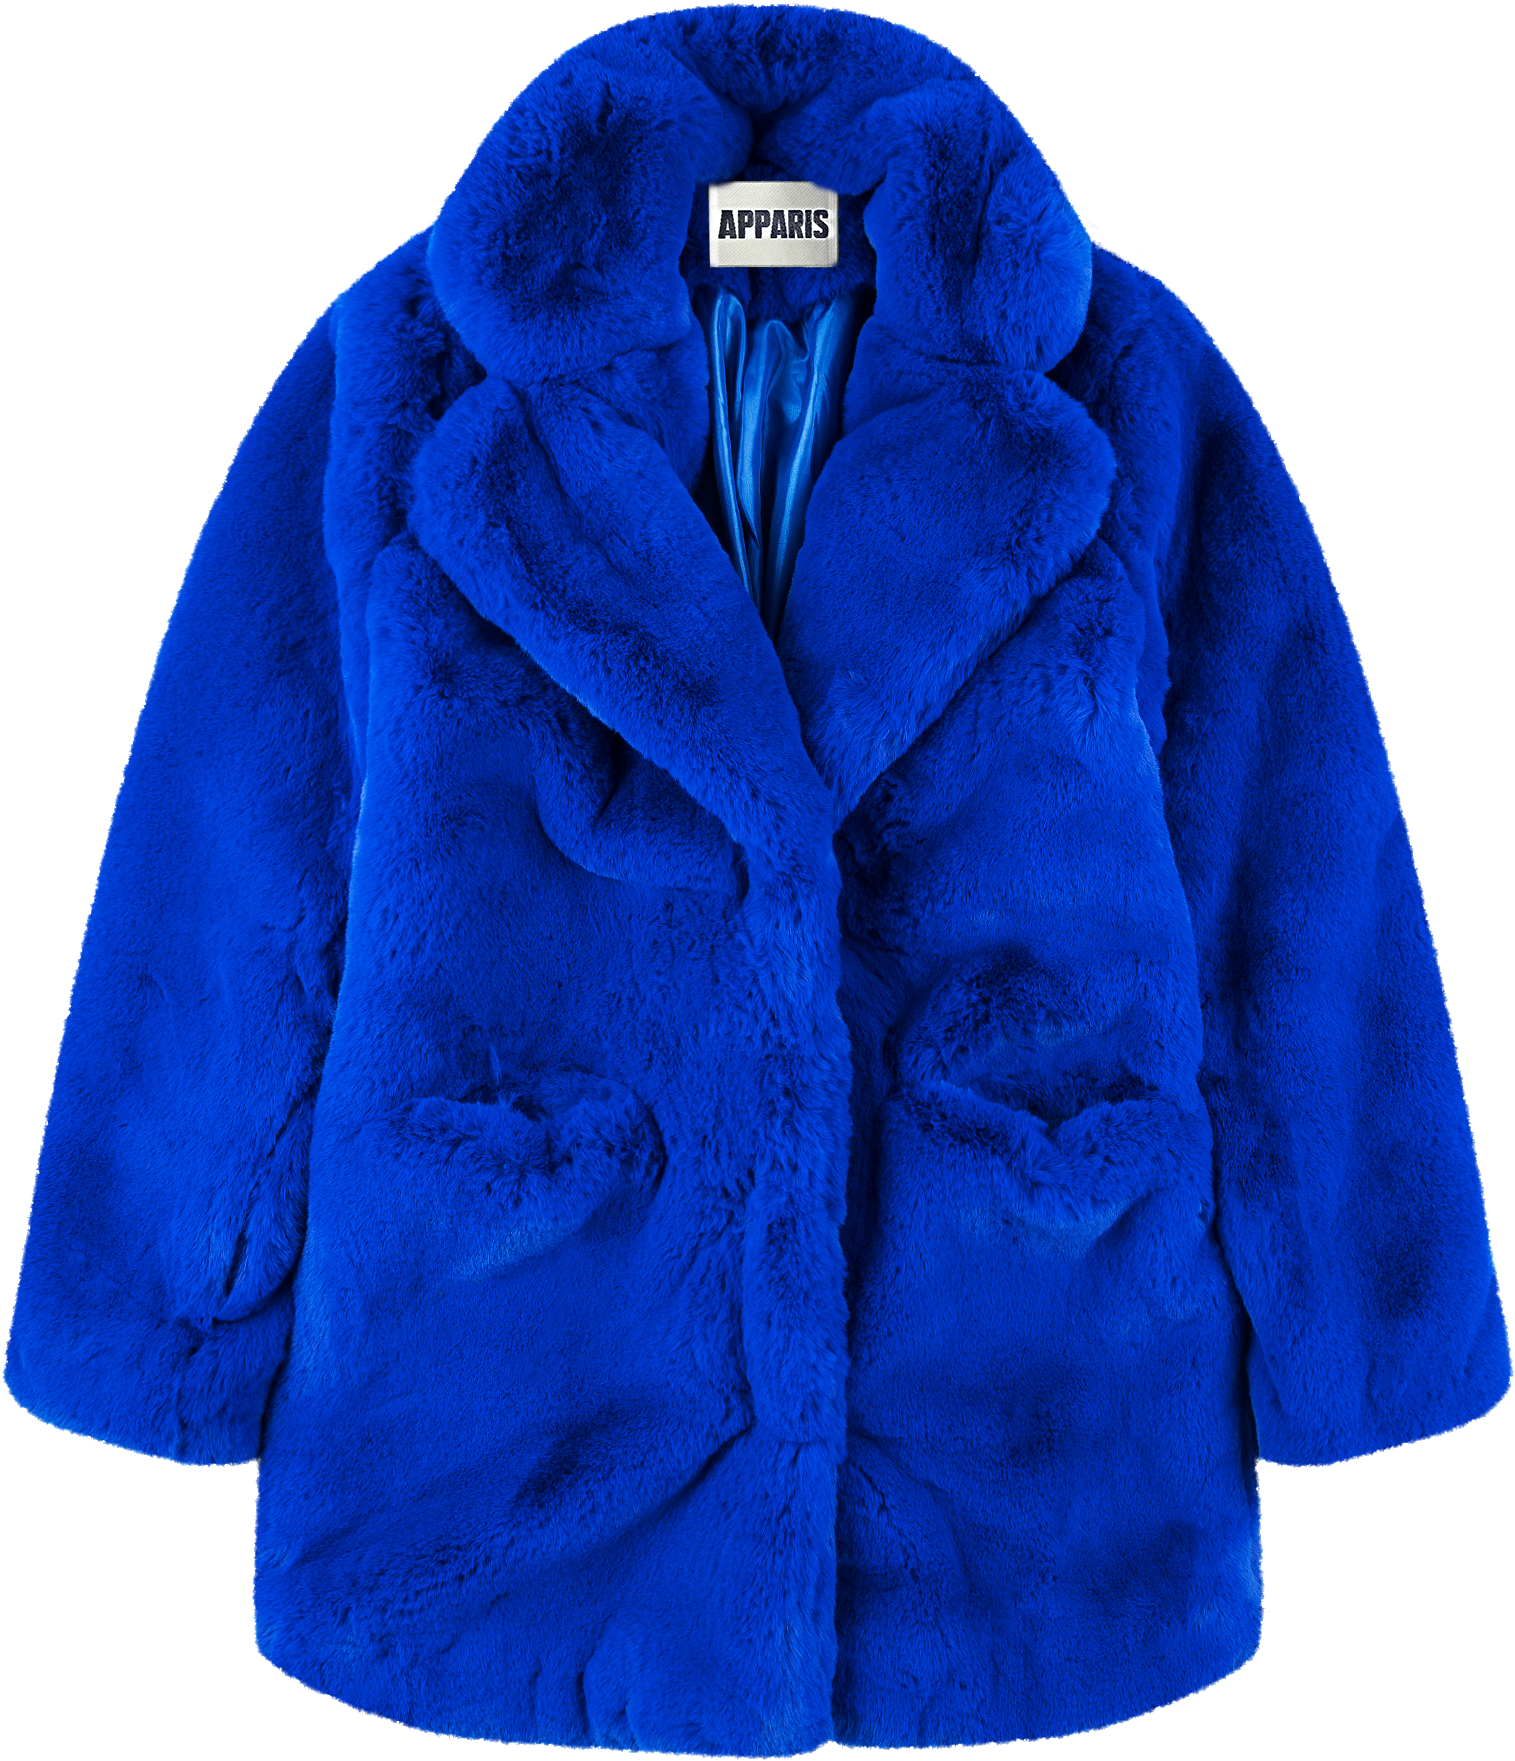 Blue Faux Fur Coat Apparis Brand